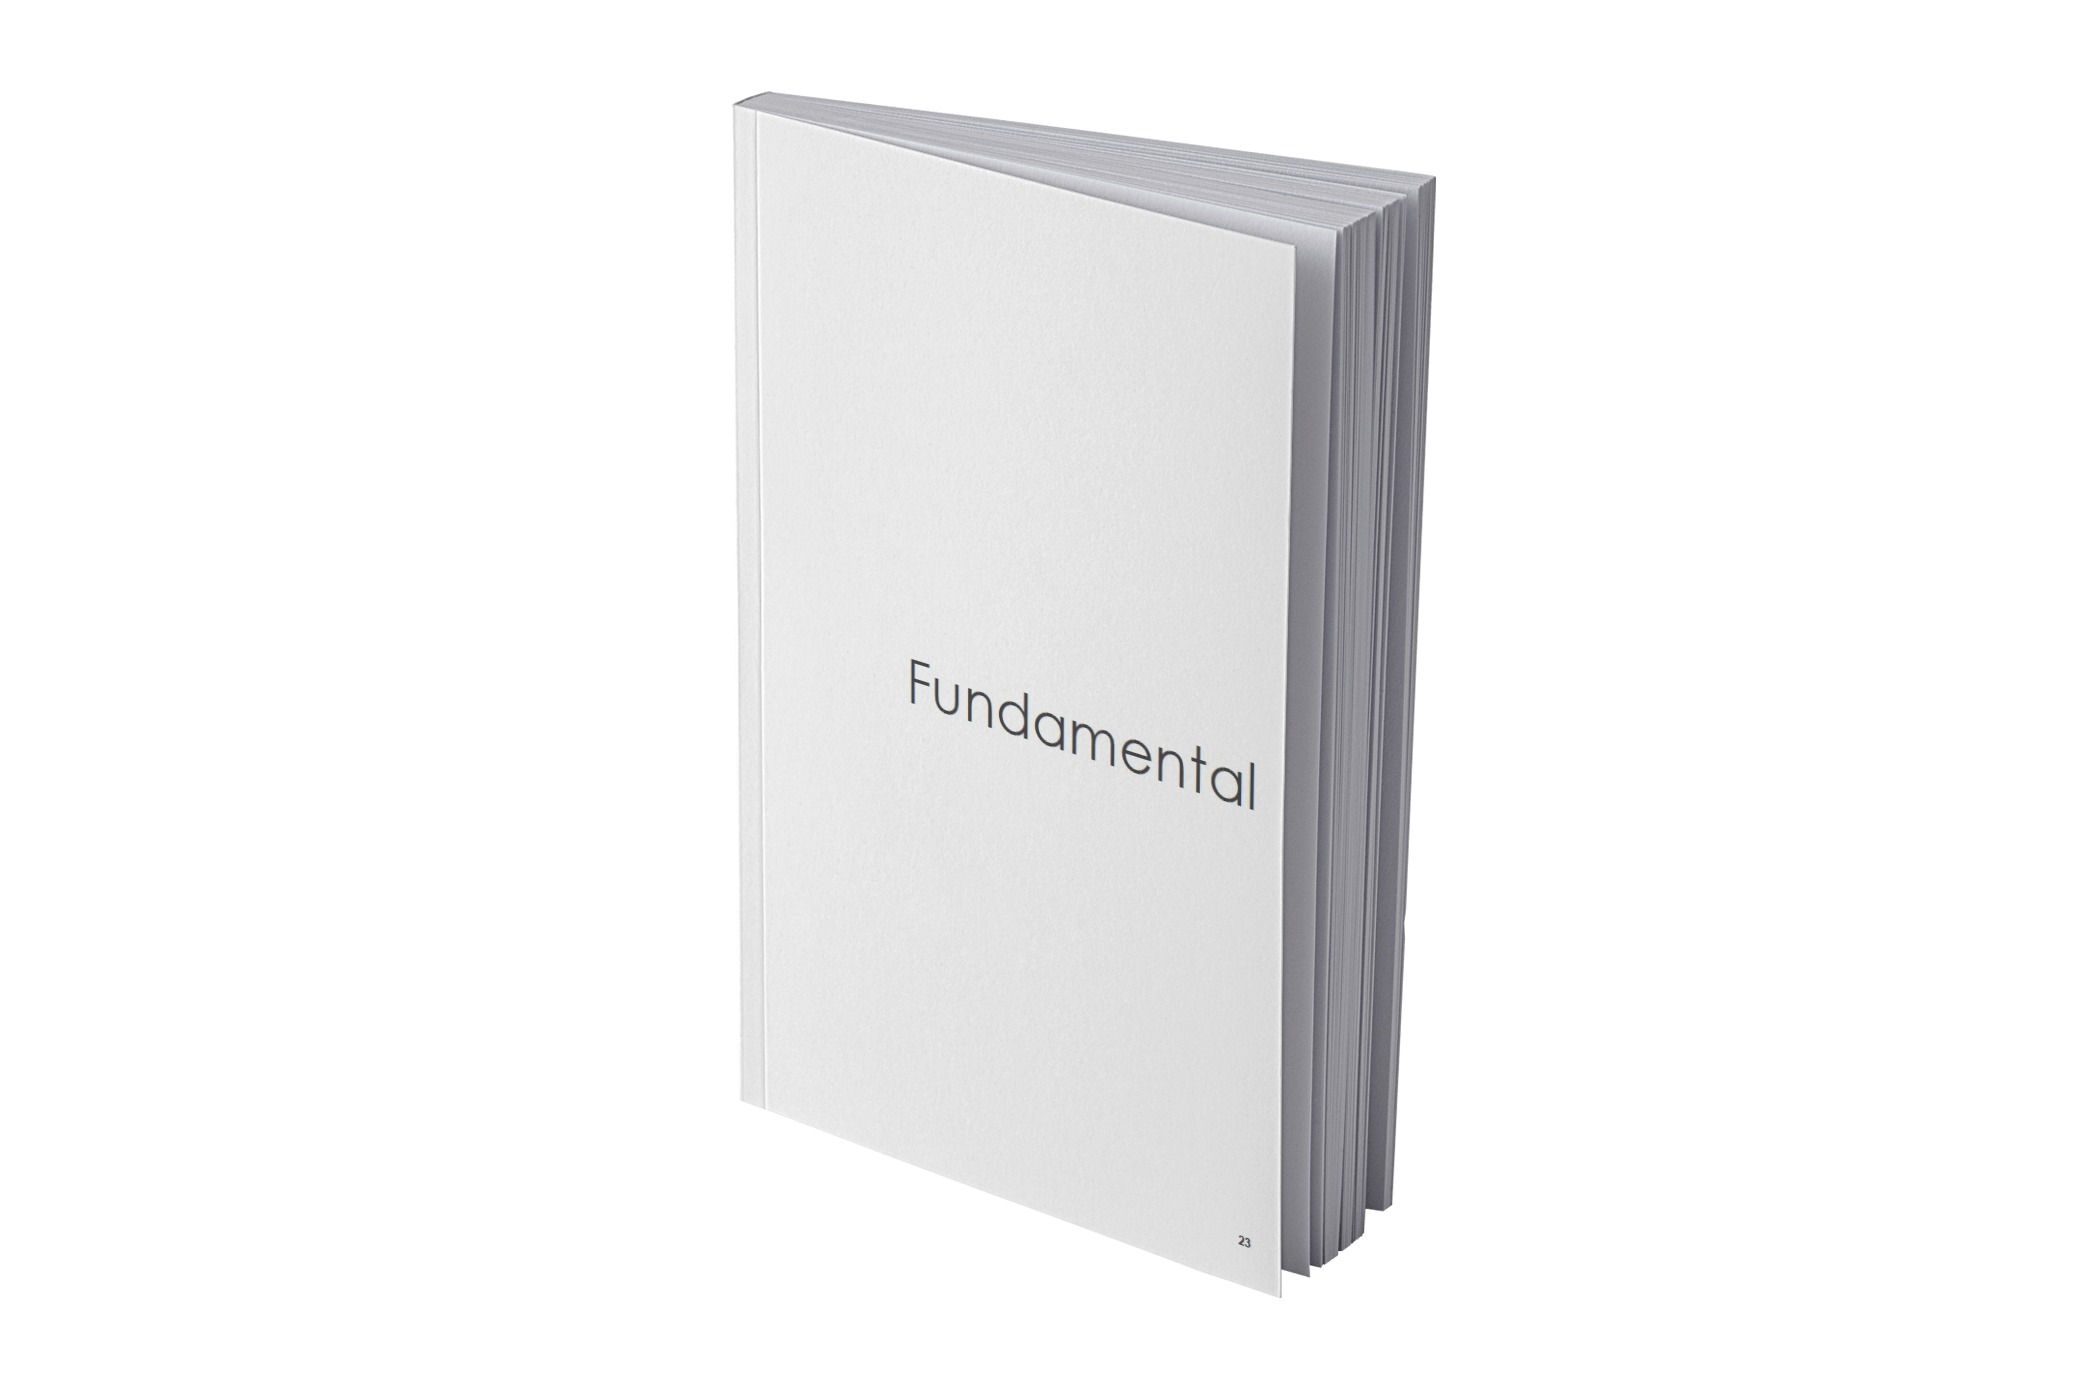 Ikona cennika - książka z napisem Fundamental będącym nazwą kolekcji.